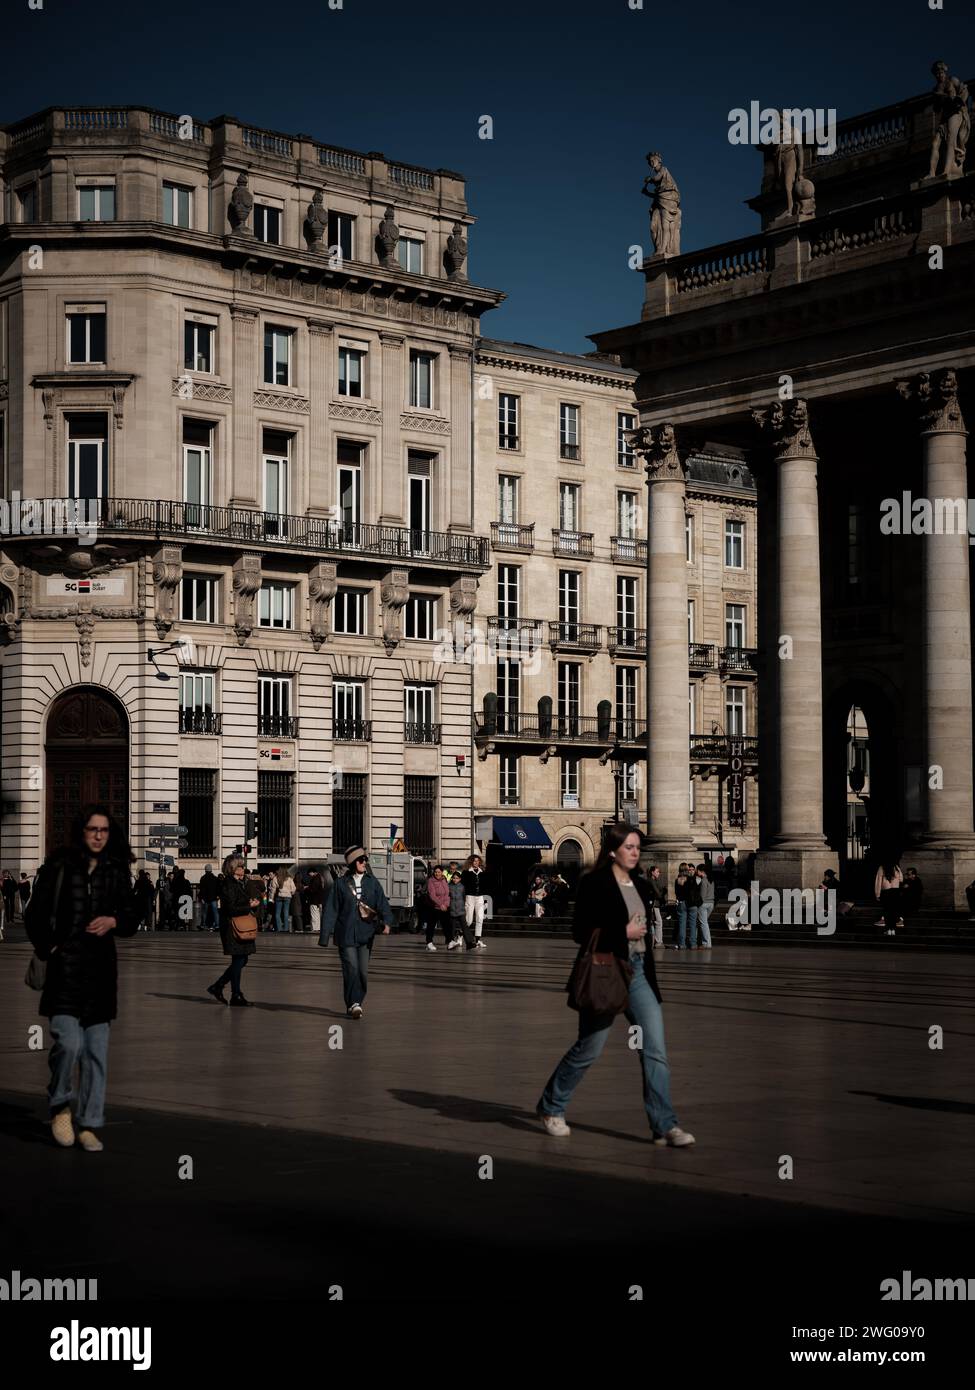 La vie quotidienne vue dans les rues de Bordeaux par une journée ensoleillée d'hiver. Connue comme la capitale mondiale du vin, Bordeaux est la 6e ville de France. Banque D'Images